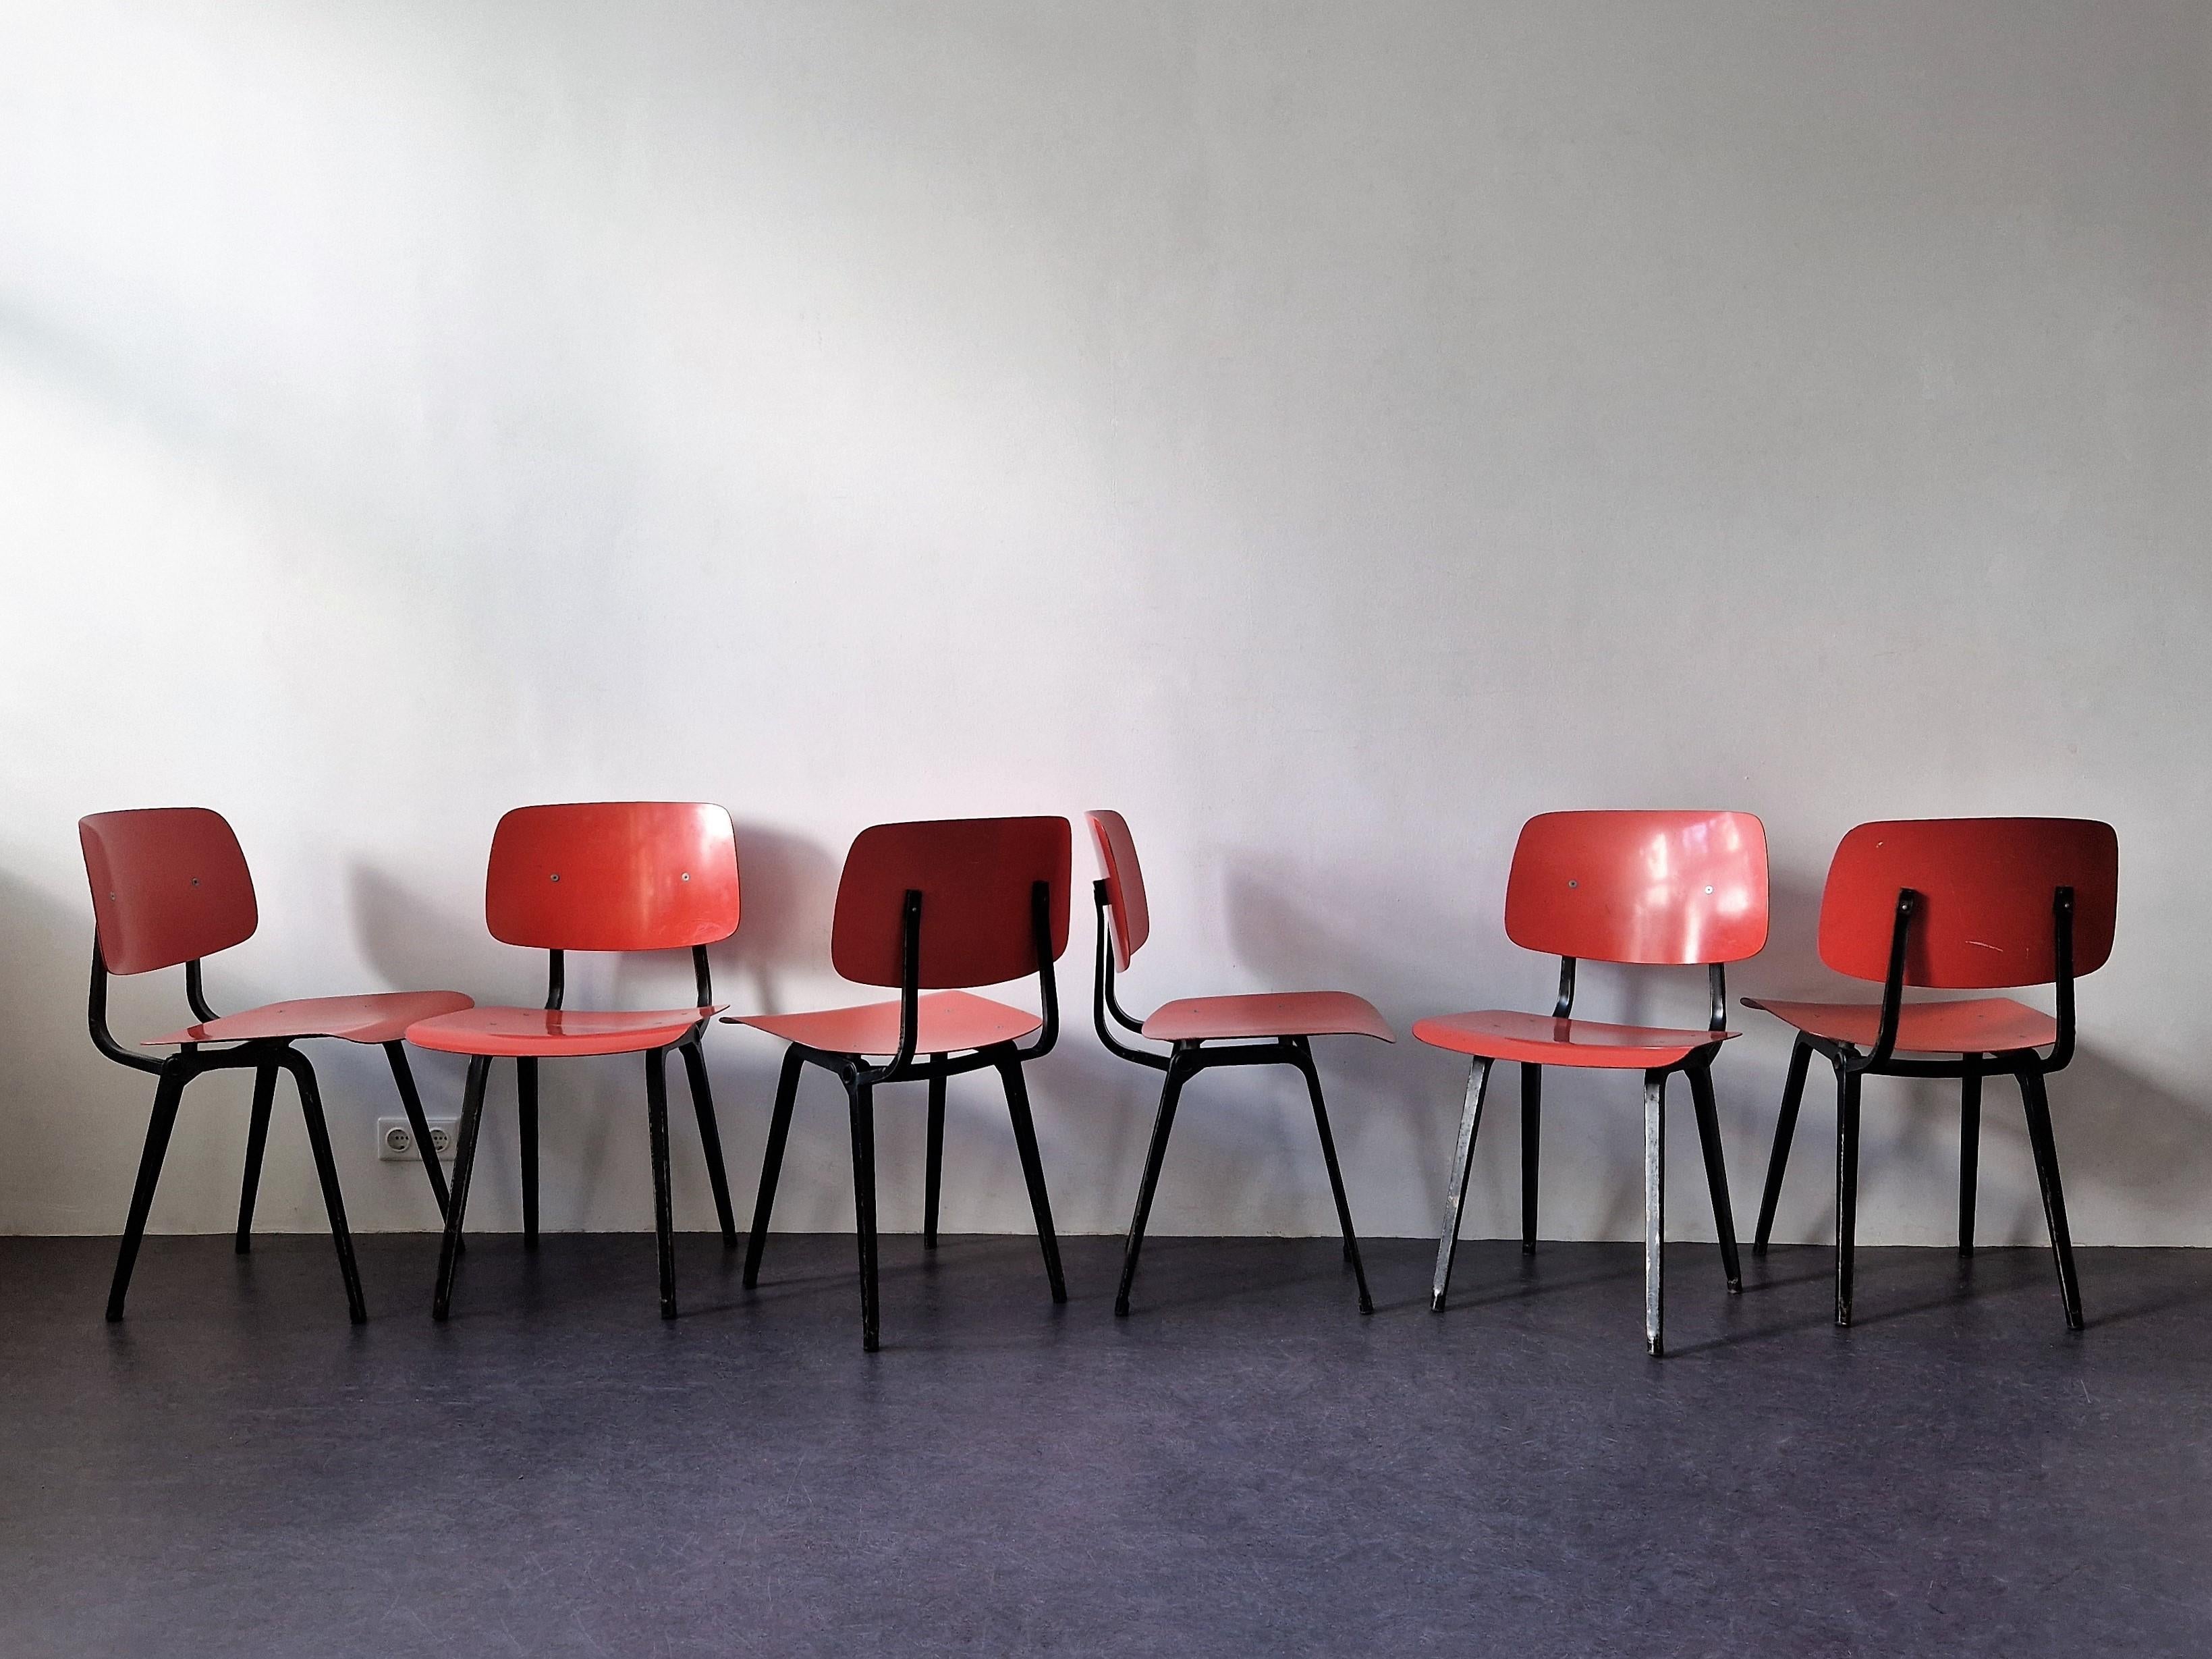 Der Stuhl 'Revolt' wurde von Friso Kramer für Ahrend de Cirkel entworfen. Ein preisgekröntes Design, das zu einer Ikone des niederländischen Industriedesigns aus den 1950er Jahren geworden ist. Dieser solide Stuhl hat ein gefaltetes schwarzes